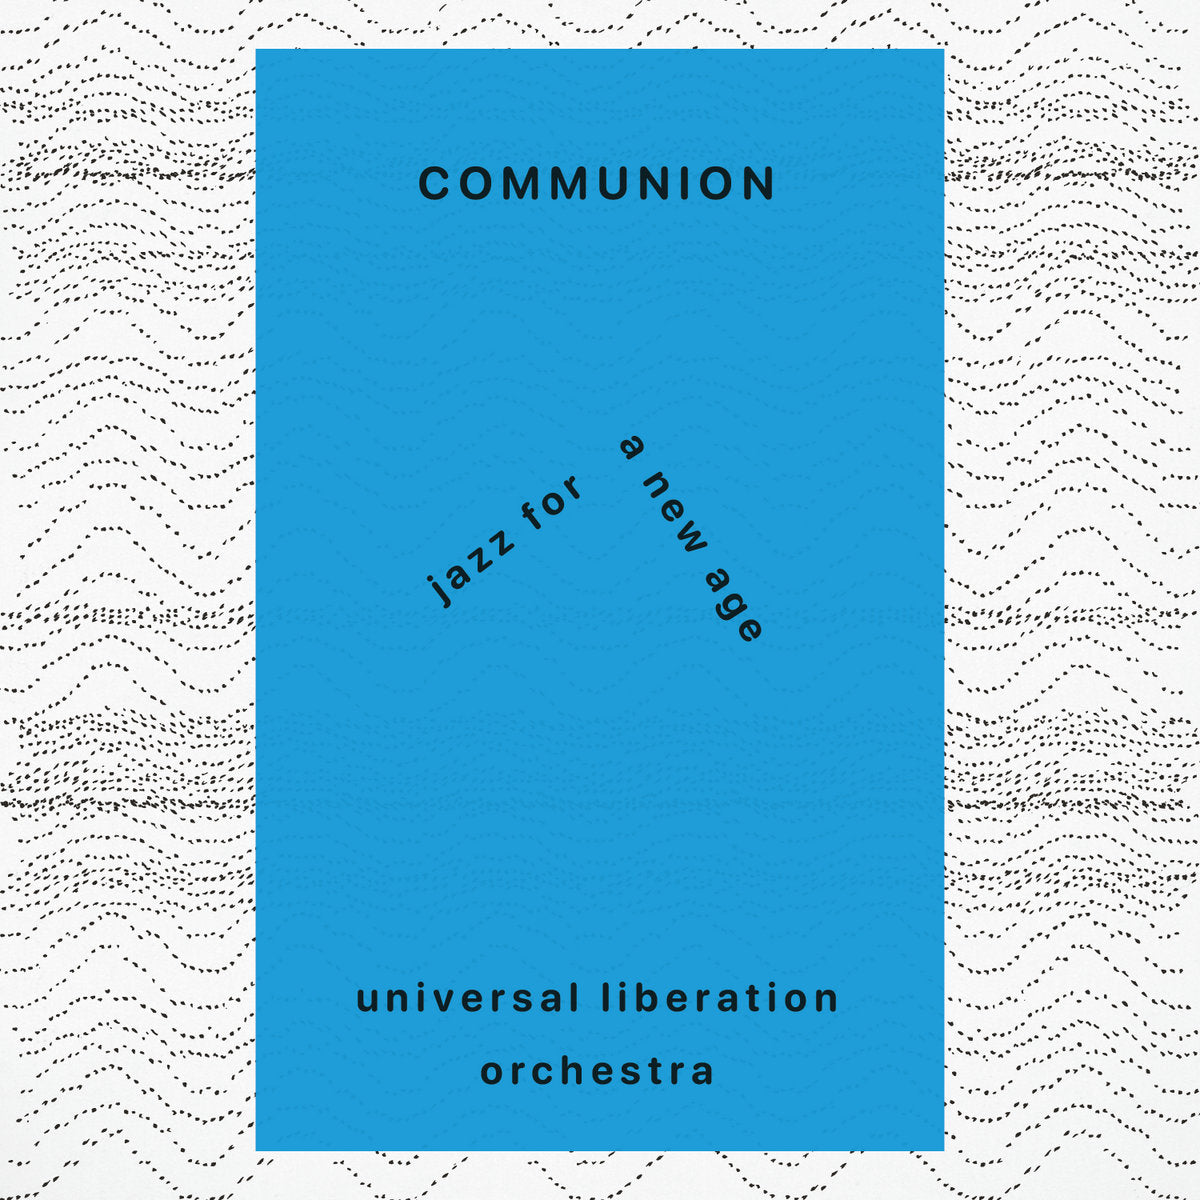 Universal Liberation Orchestra - Communion